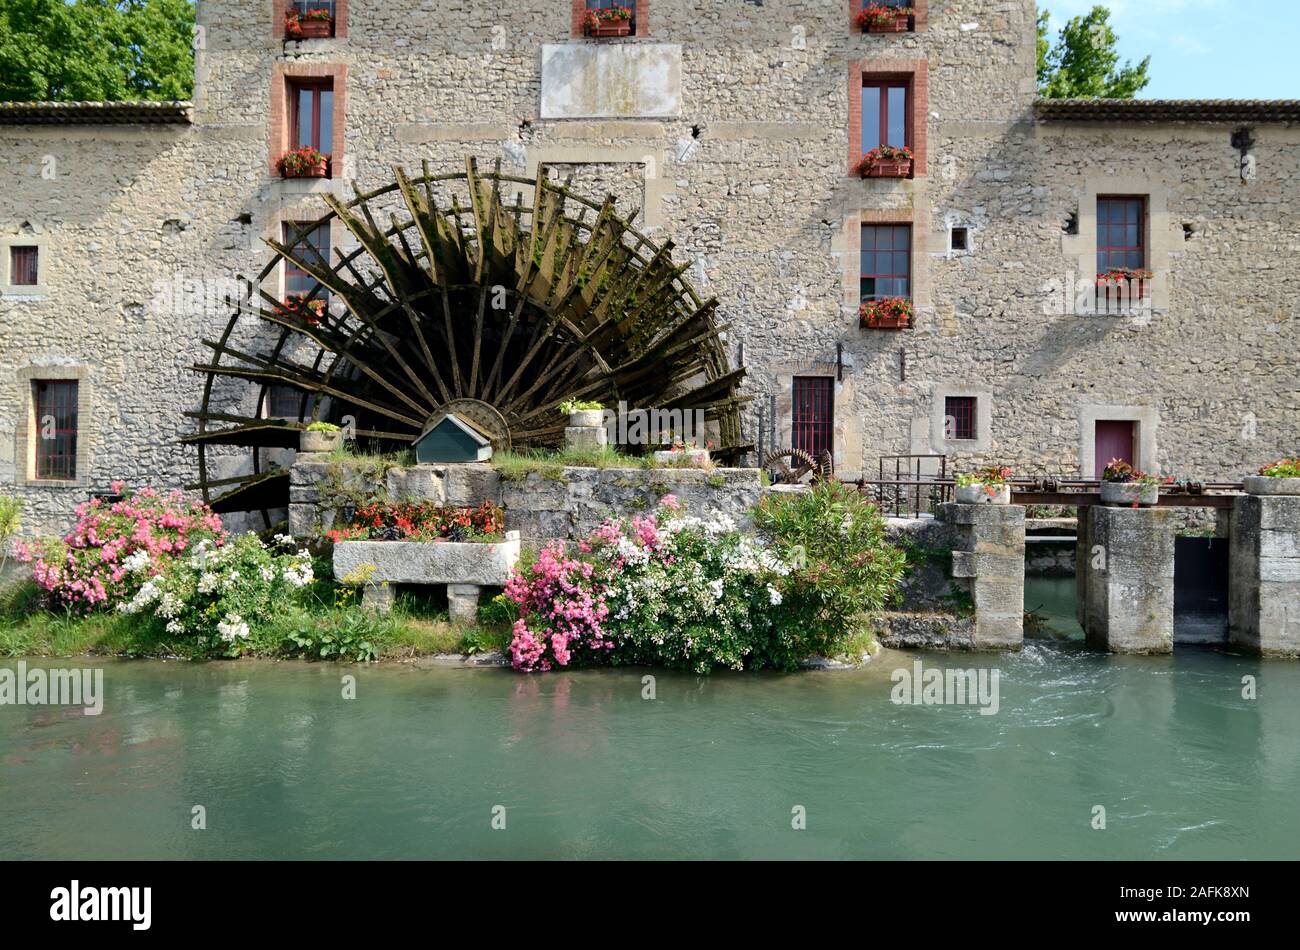 Historische c 19 Wasser Rad oder Waterwheel & Wassermühle oder Mühle Haus Aix-en-Provence Vaucluse Provence Frankreich Stockfoto